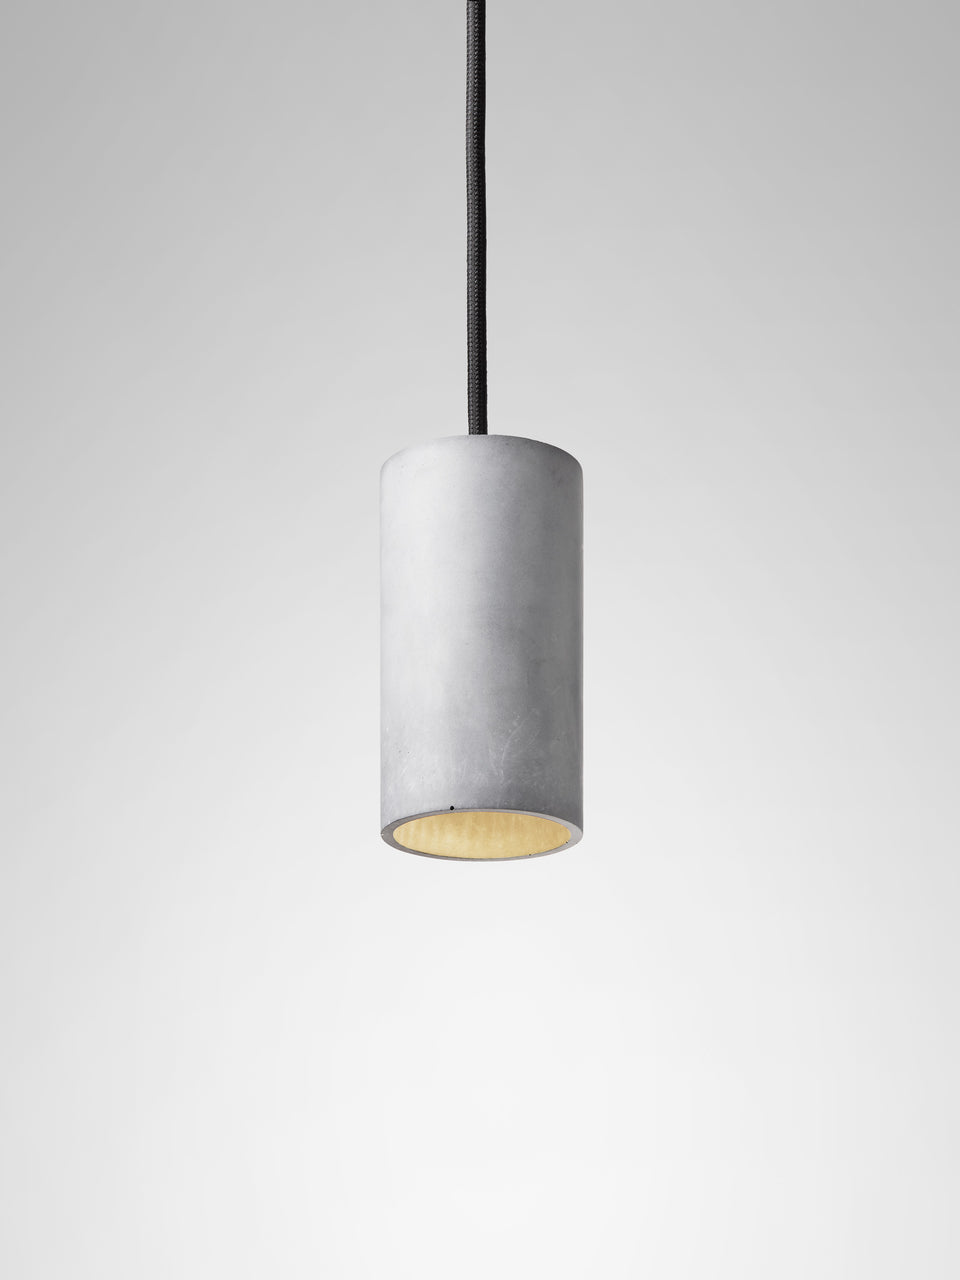 Cromia pendant lamp 13 cm